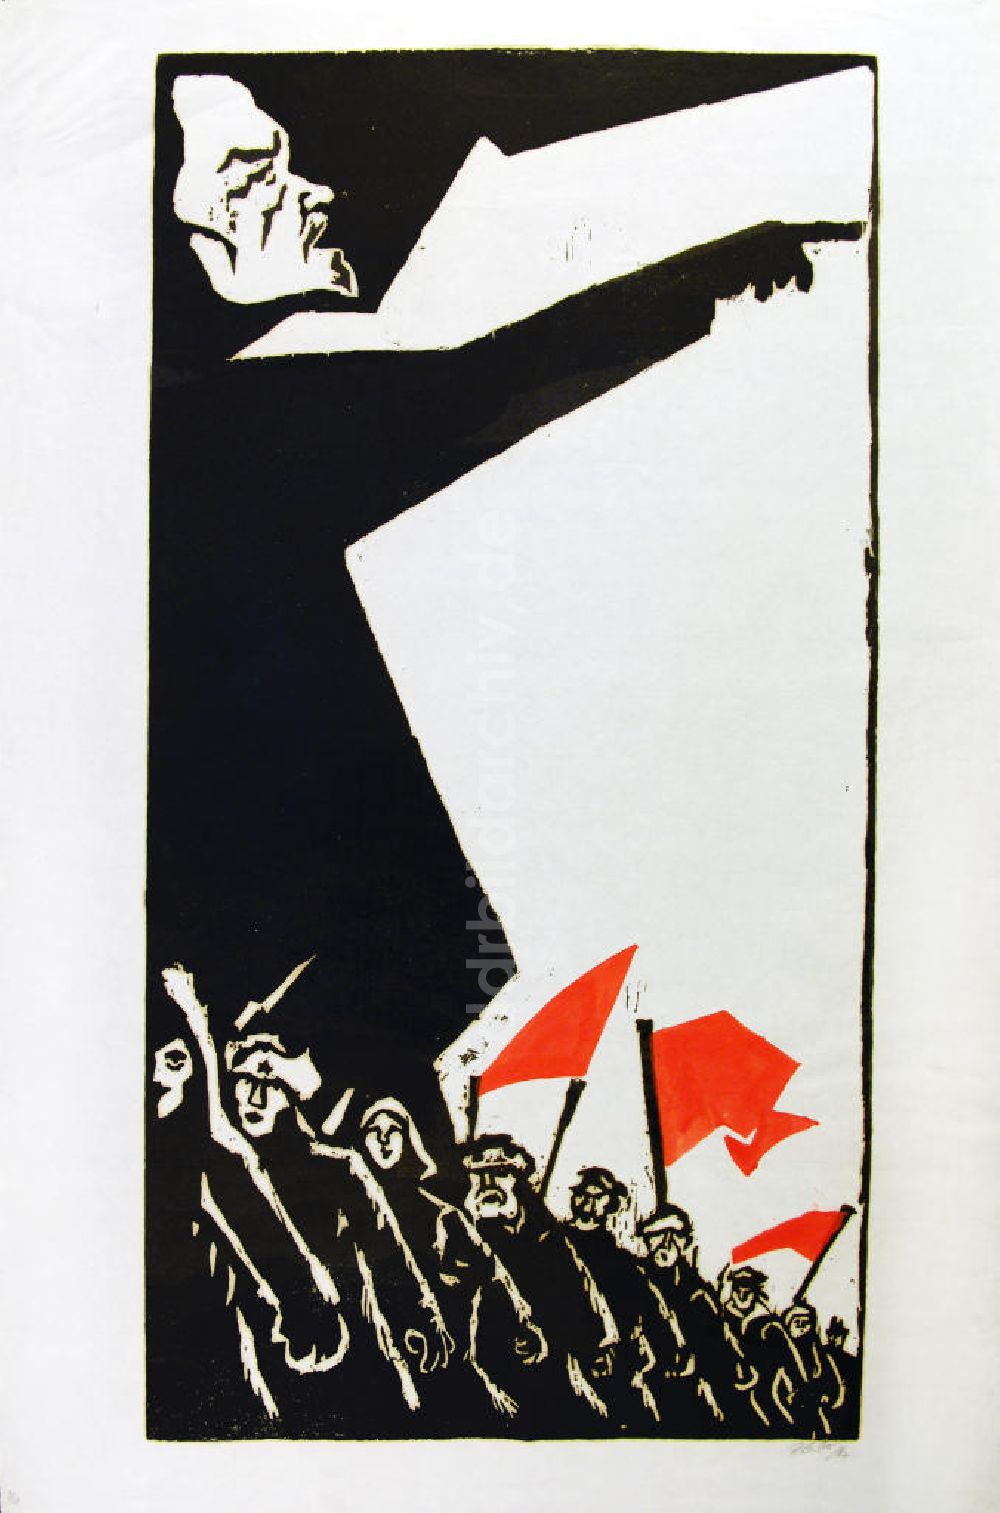 DDR-Bildarchiv: Berlin - Grafik von Herbert Sandberg Lenin aus dem Jahr 1967